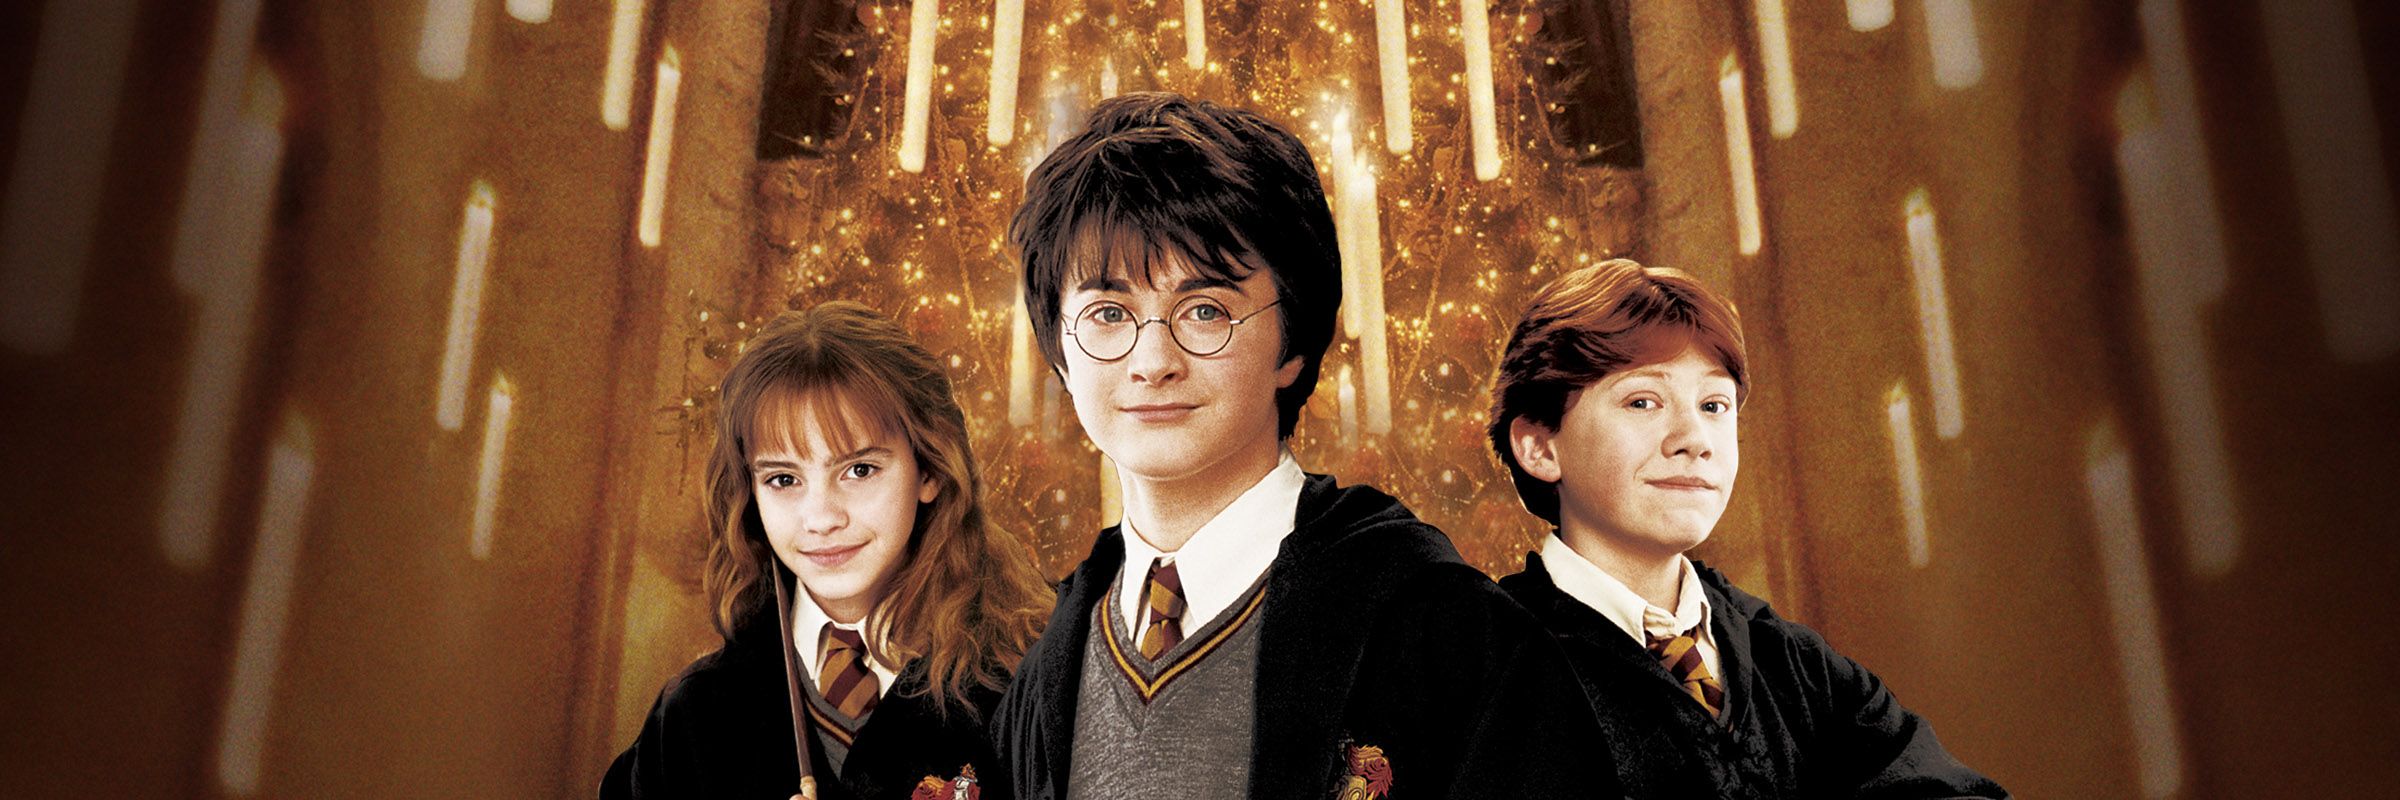 Hình ảnh đẹp nhất của Harry Potter.